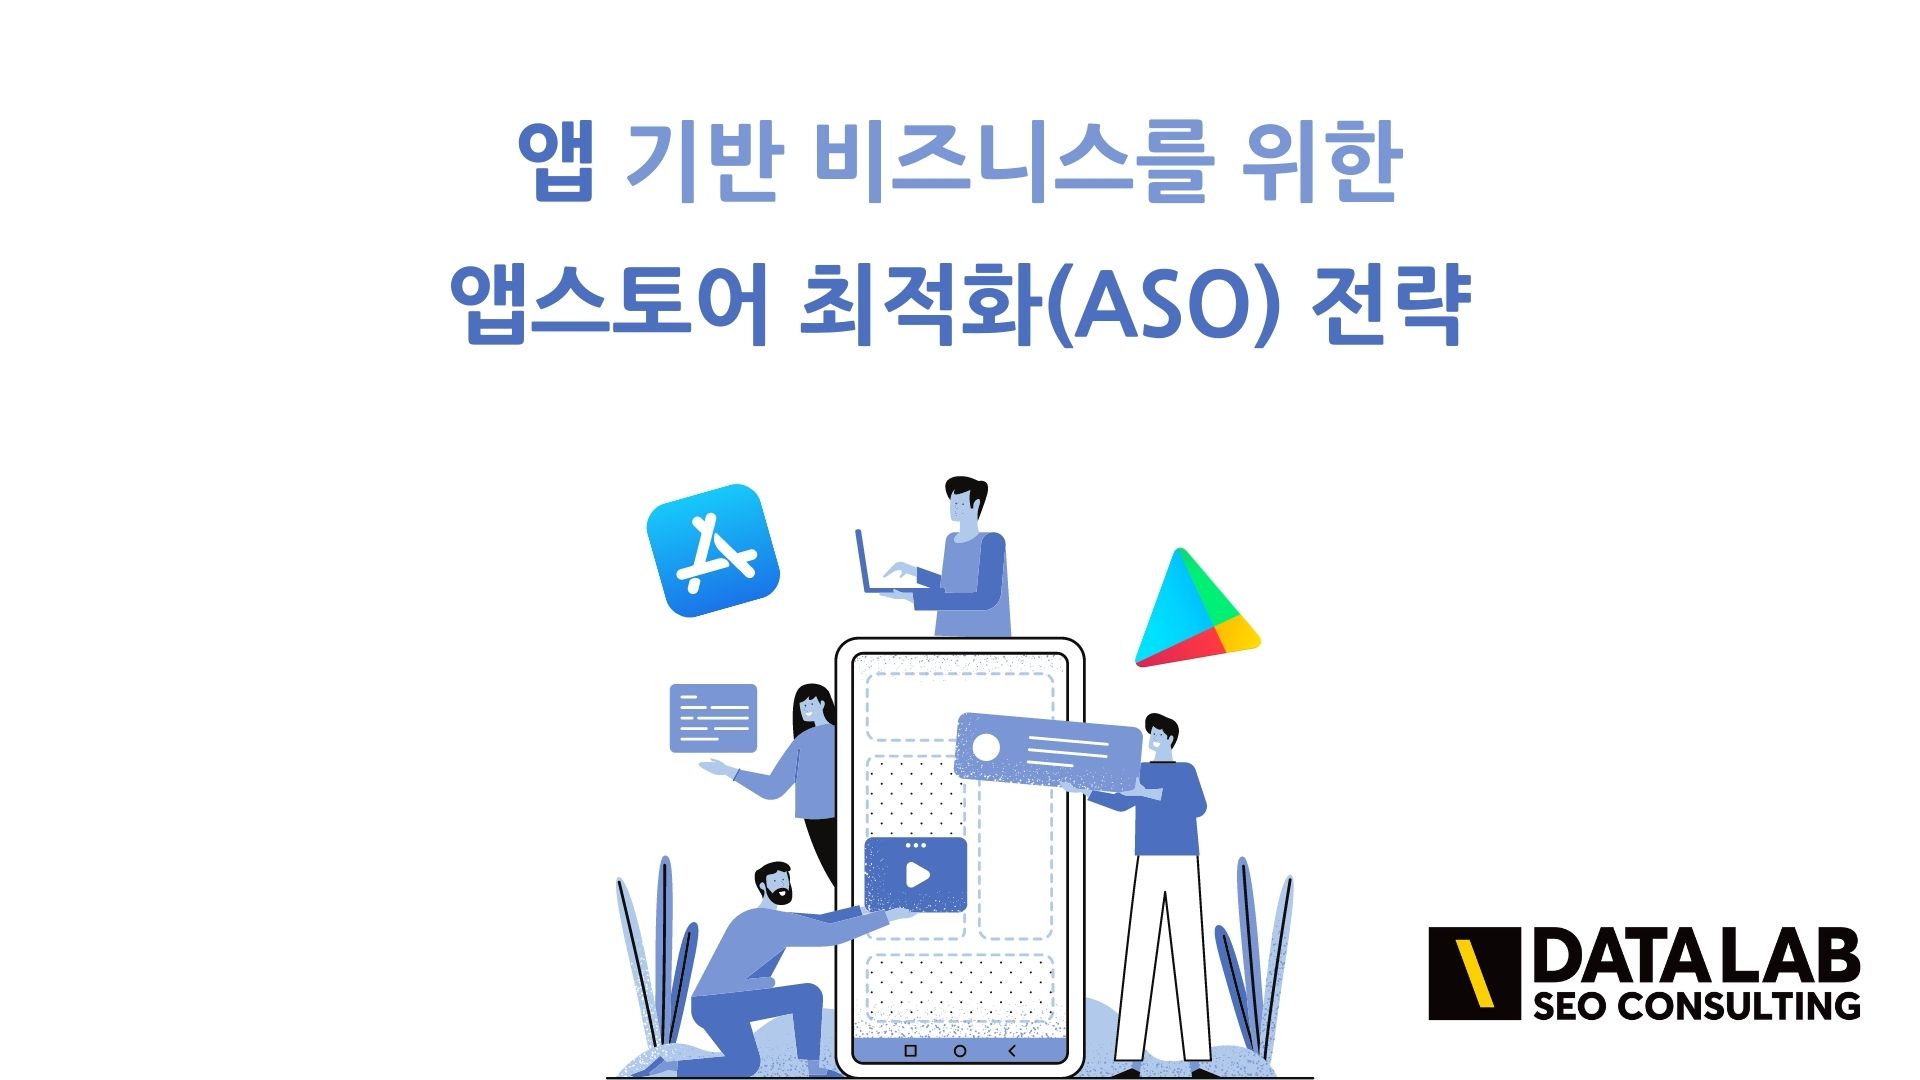 앱 다운로드 수 증가를 위한 앱스토어 최적화(ASO)와 SEO